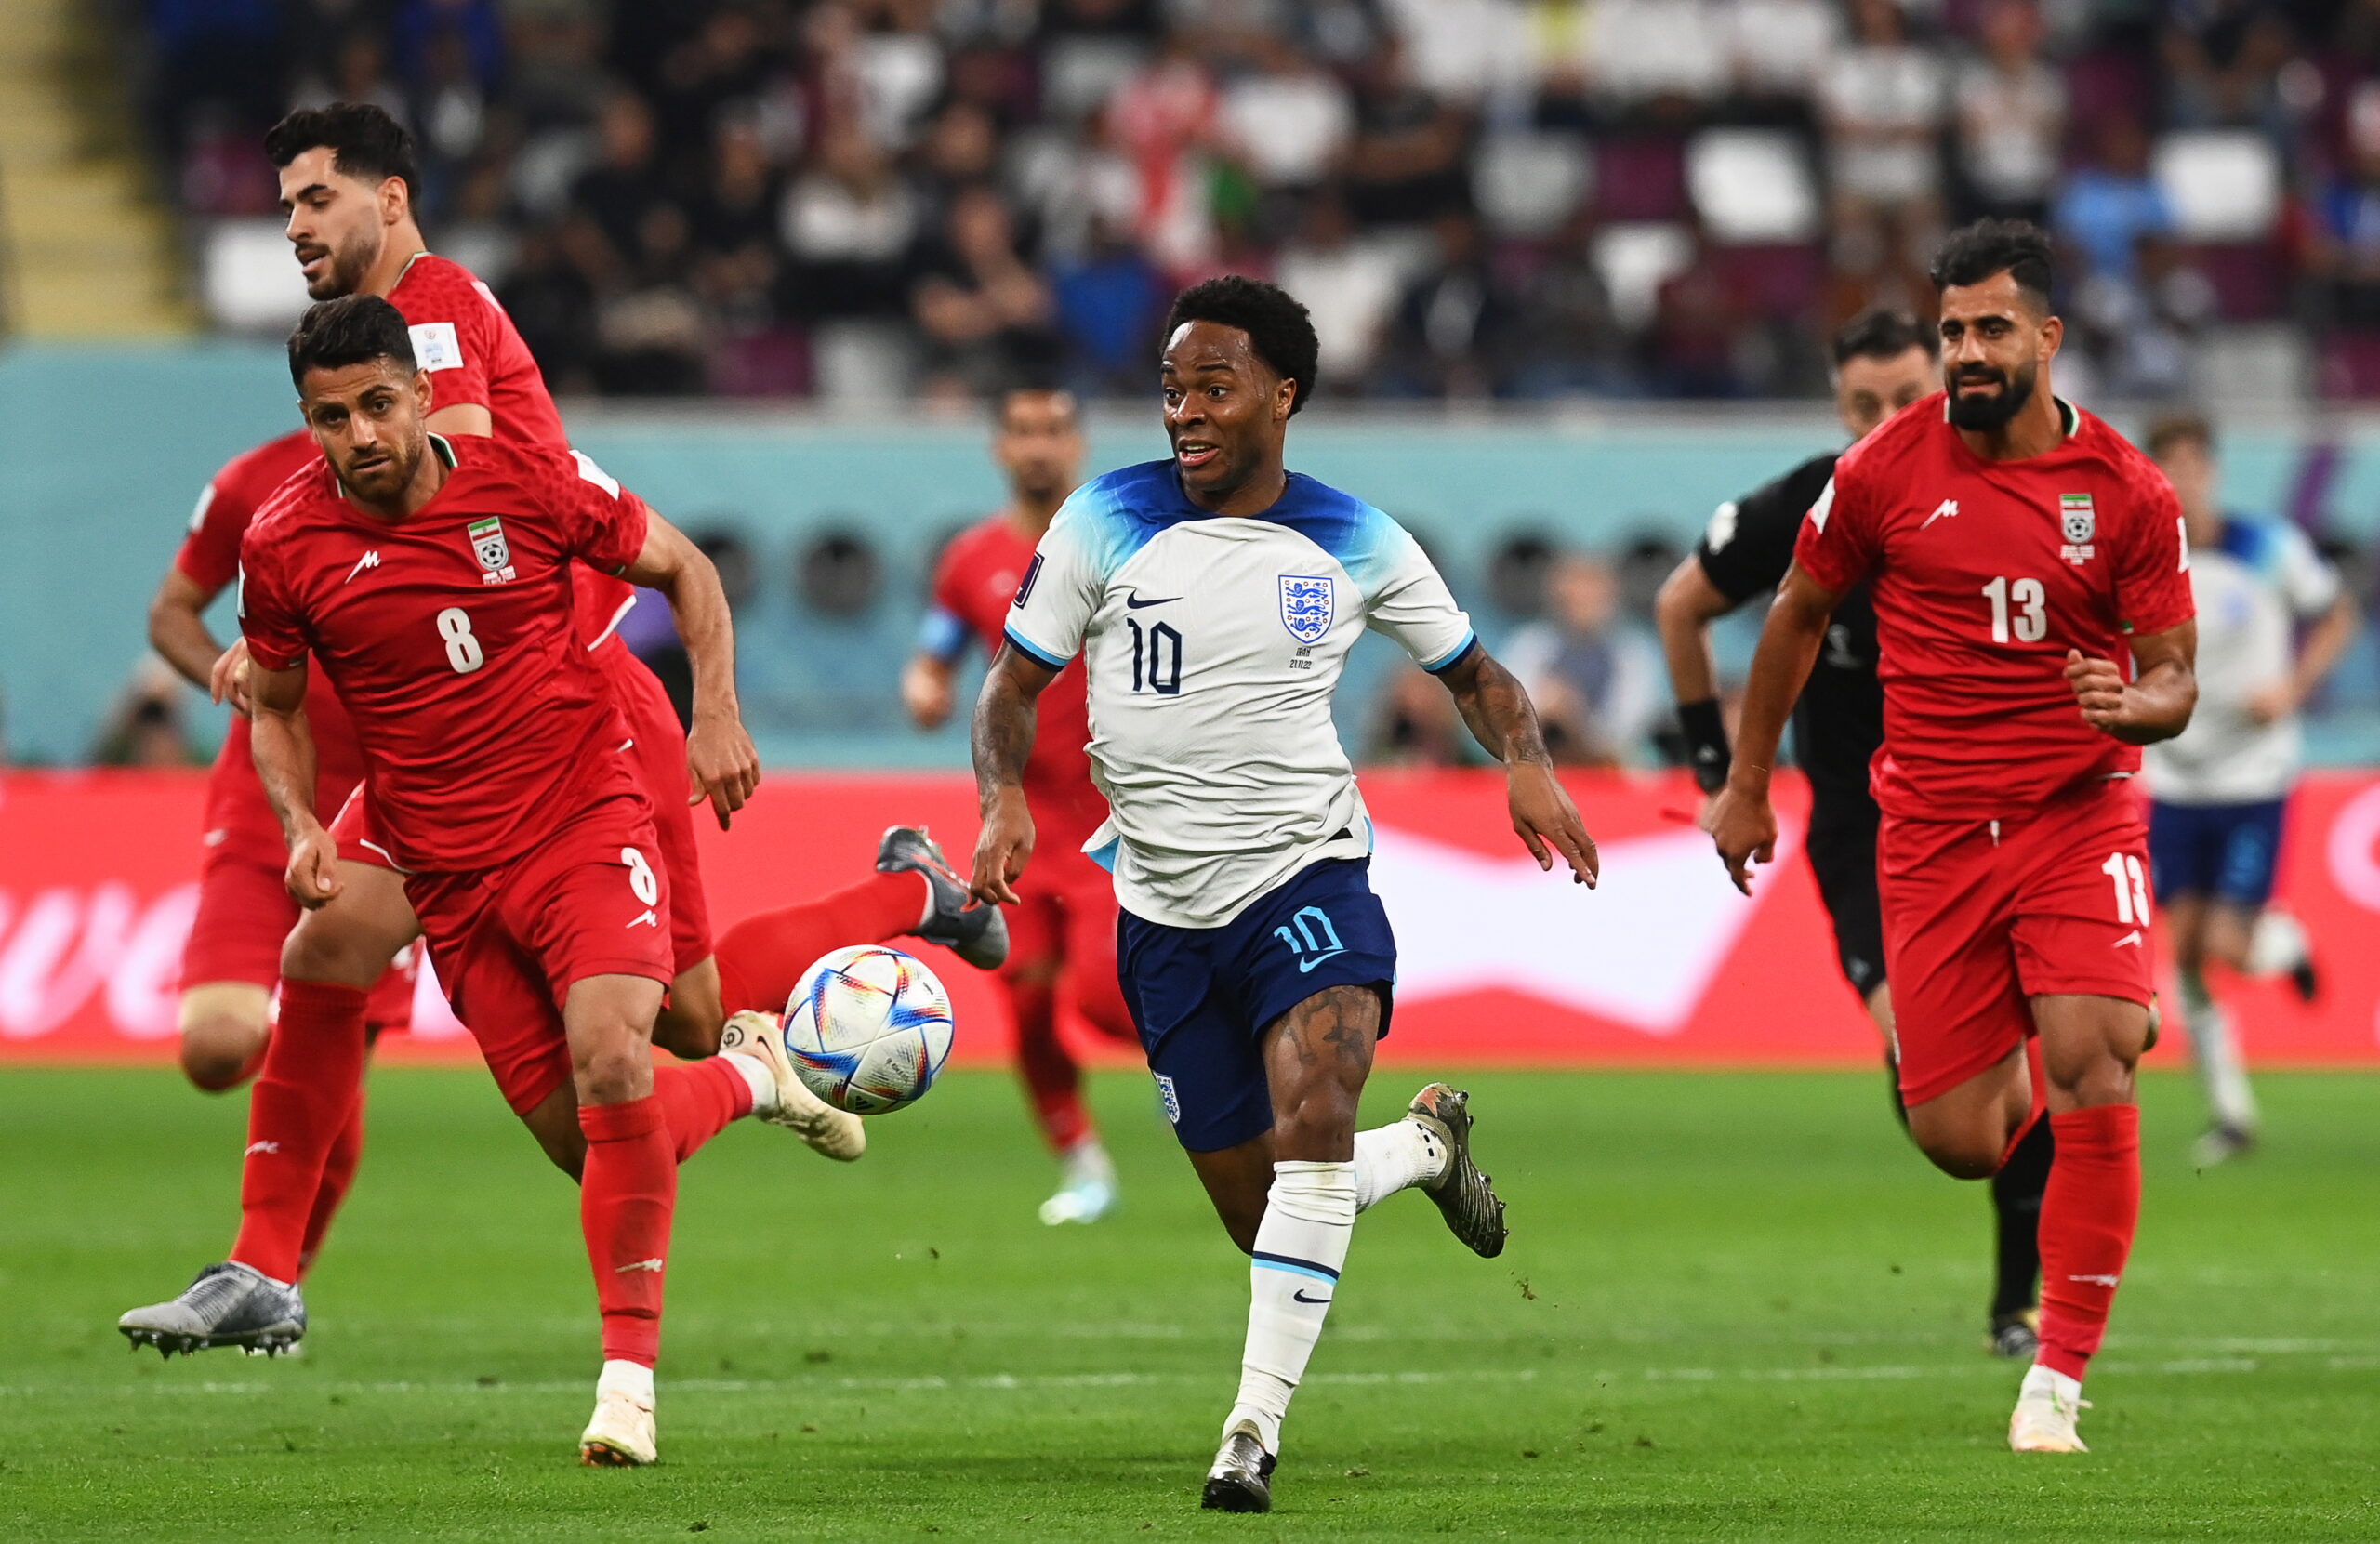 Αγγλία - Ιράν 6-2: Εξάσφαιρη πρεμιέρα για τα "τρία λιοντάρια" με τον Σάκα μεγάλο πρωταγωνιστή